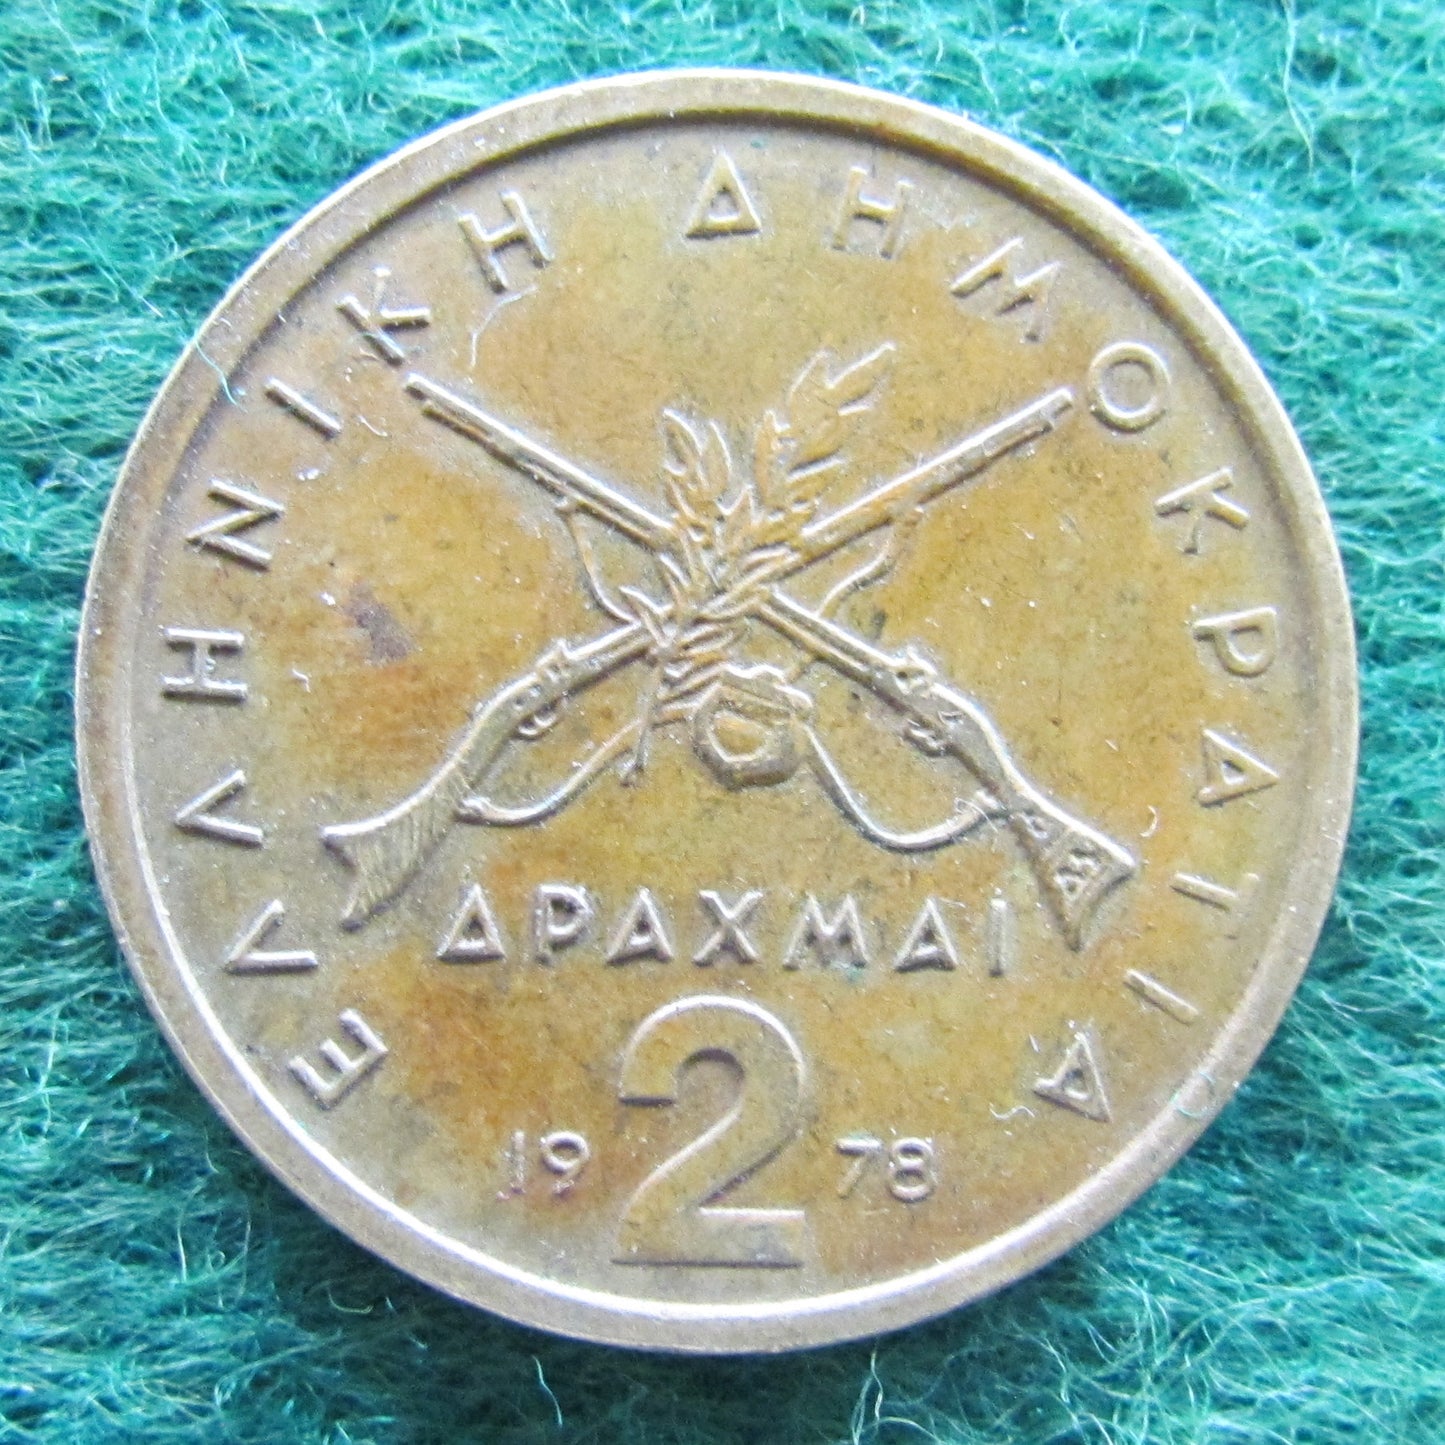 Greek 1978 2 Drachma Coin